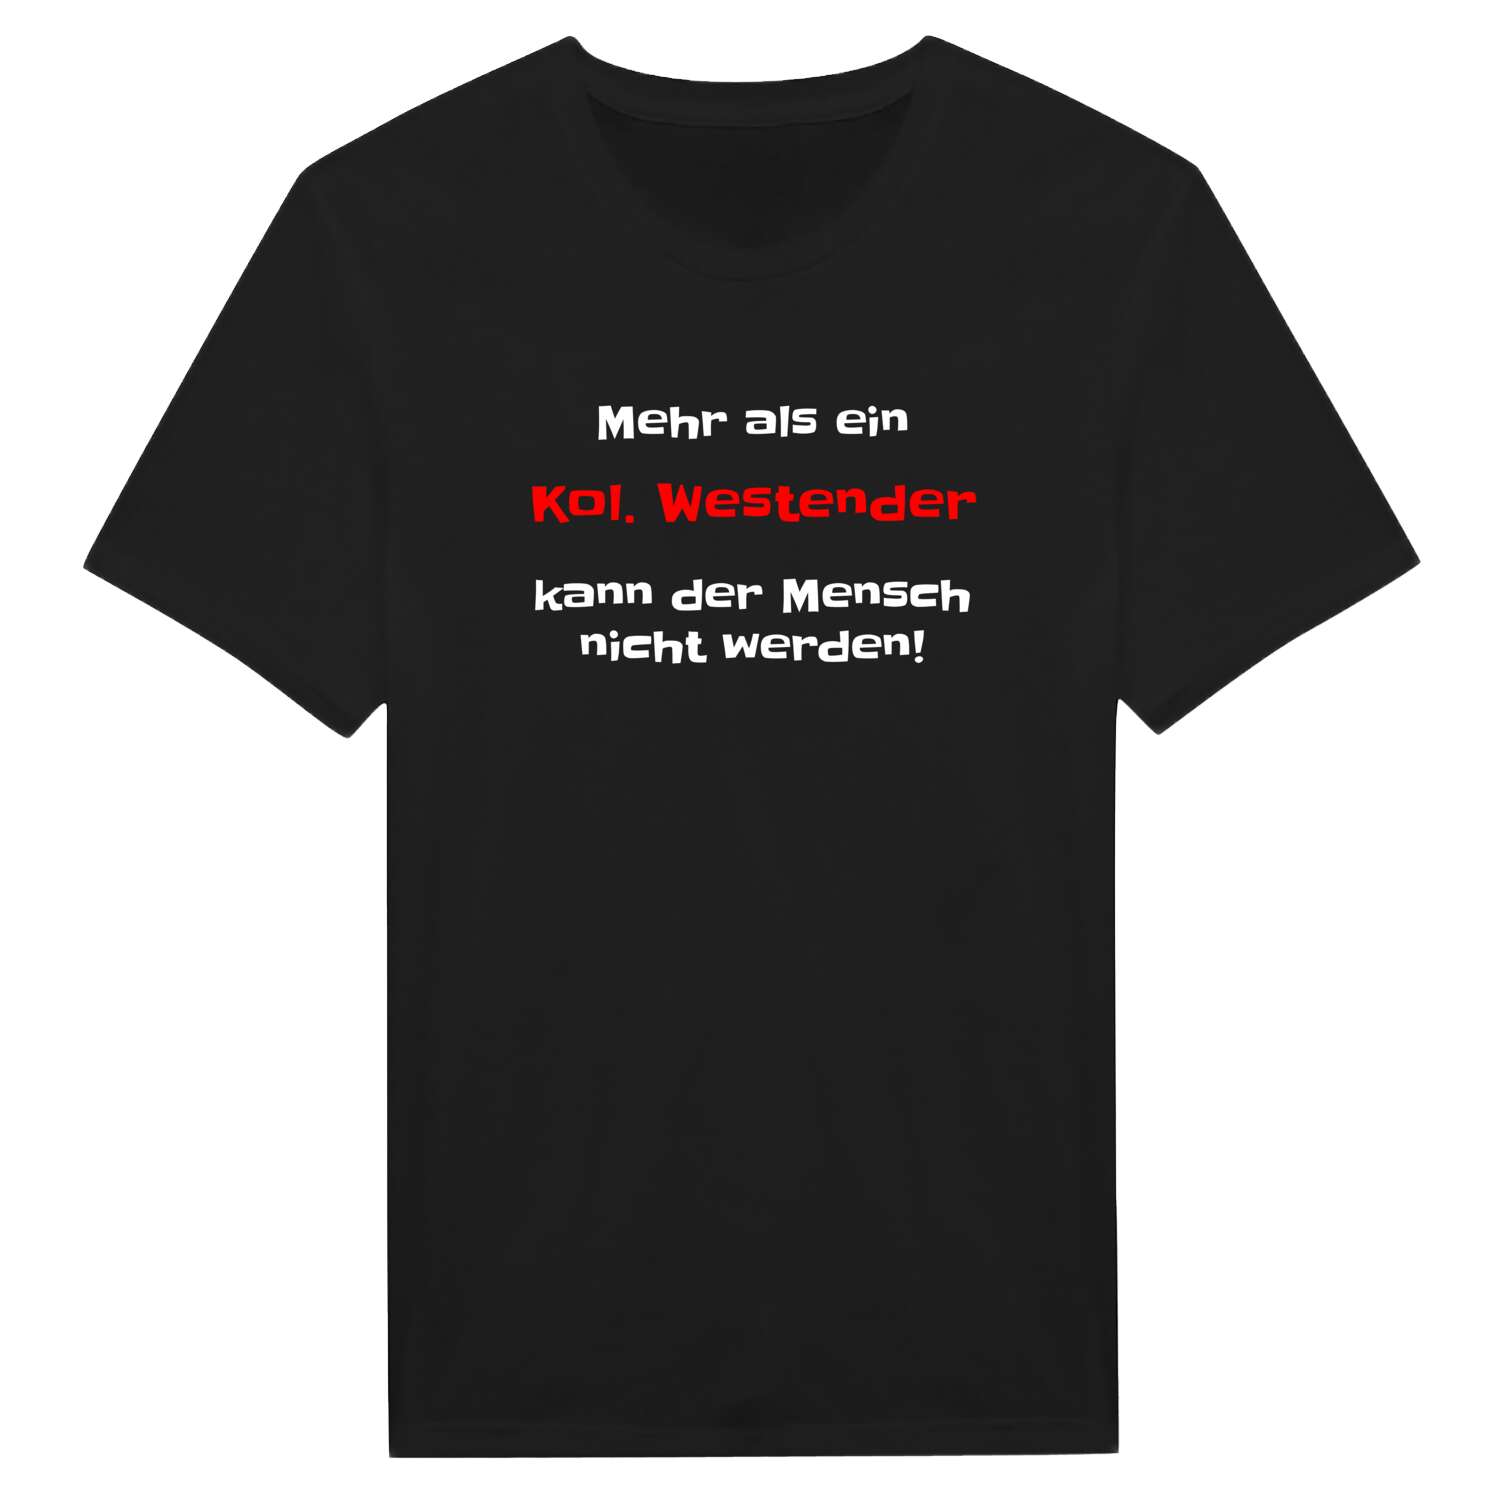 Kol. Westend T-Shirt »Mehr als ein«